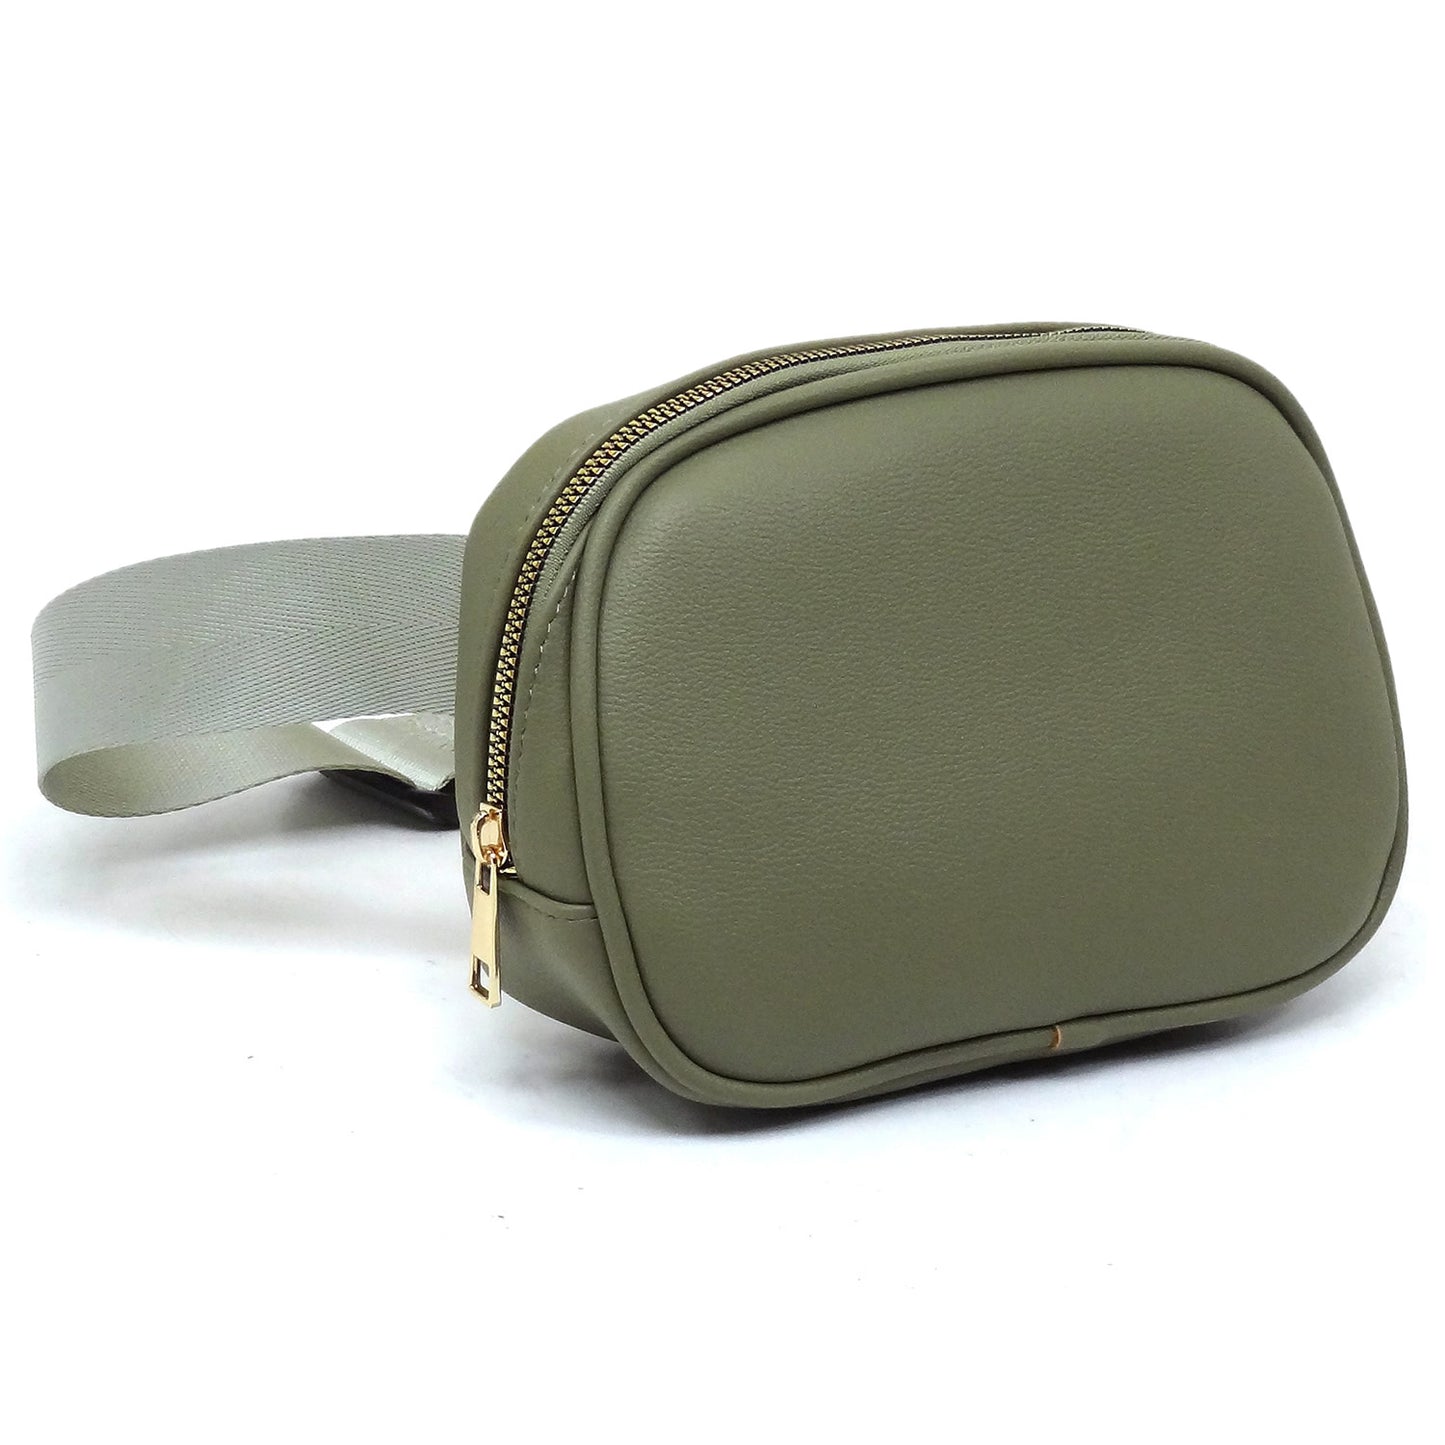 Olive belt bag